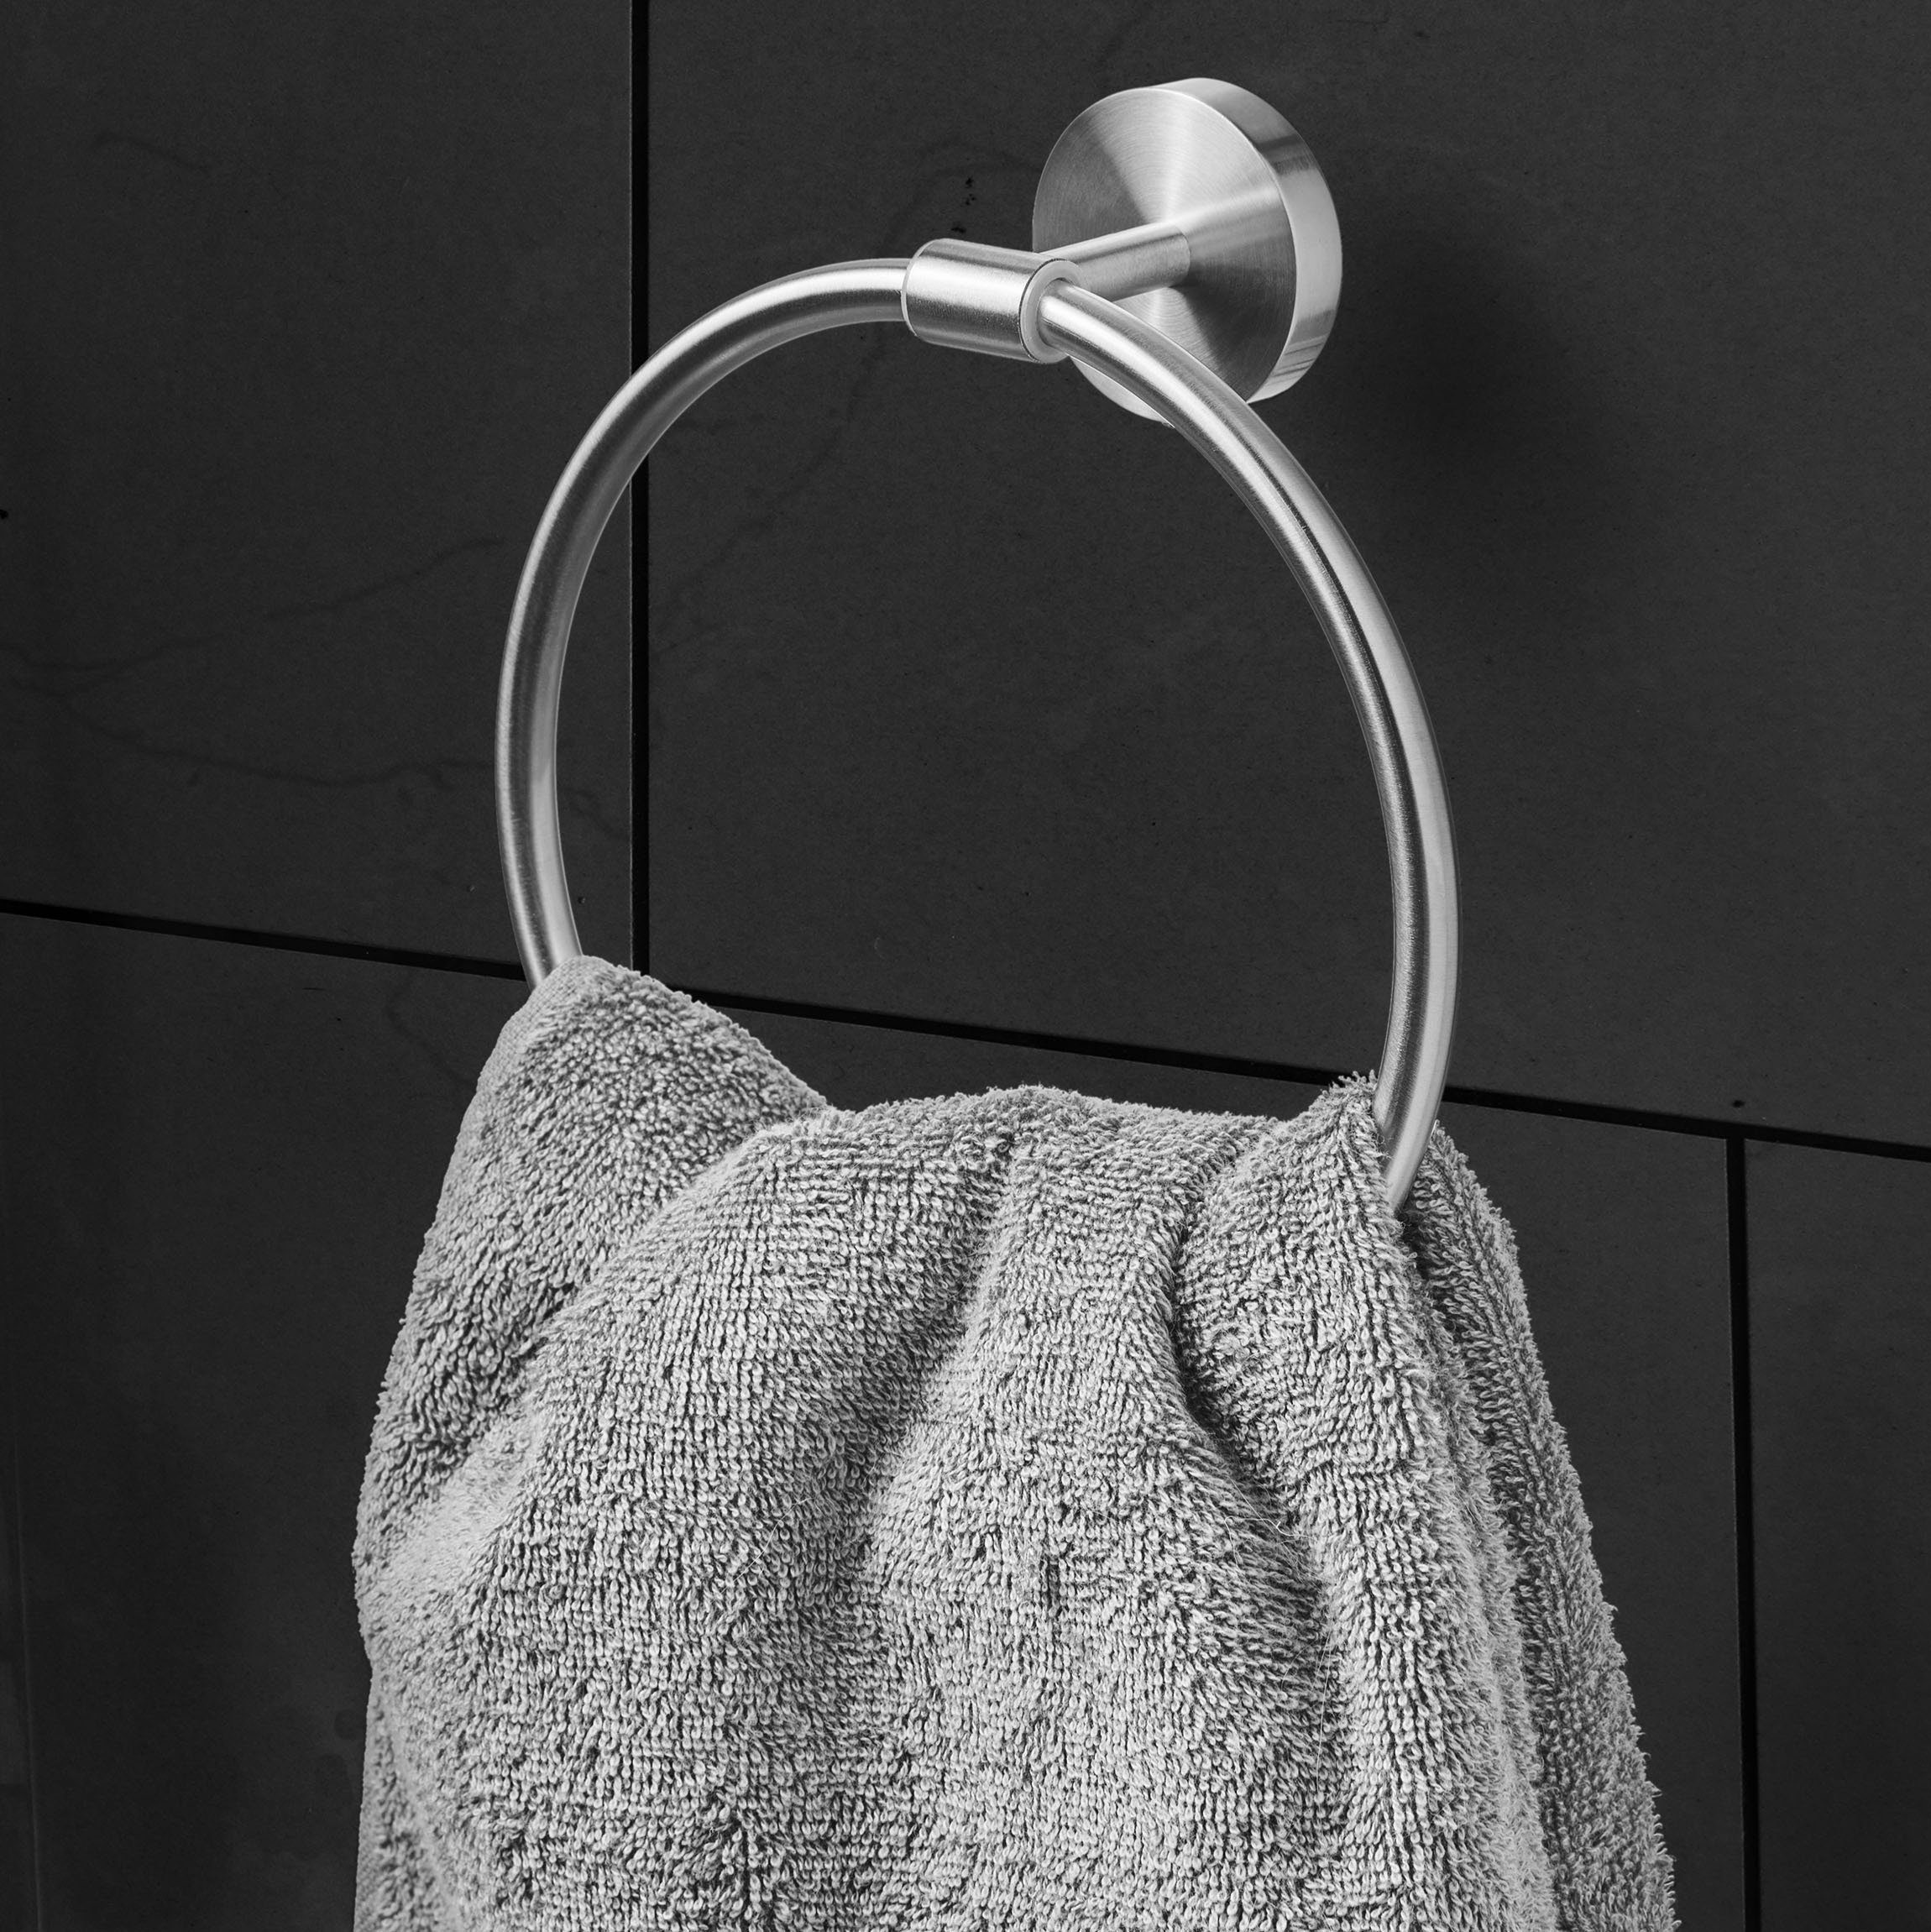 Handtuchring Silber Handtuchhalter Bath Handtuchring Luxus Amare